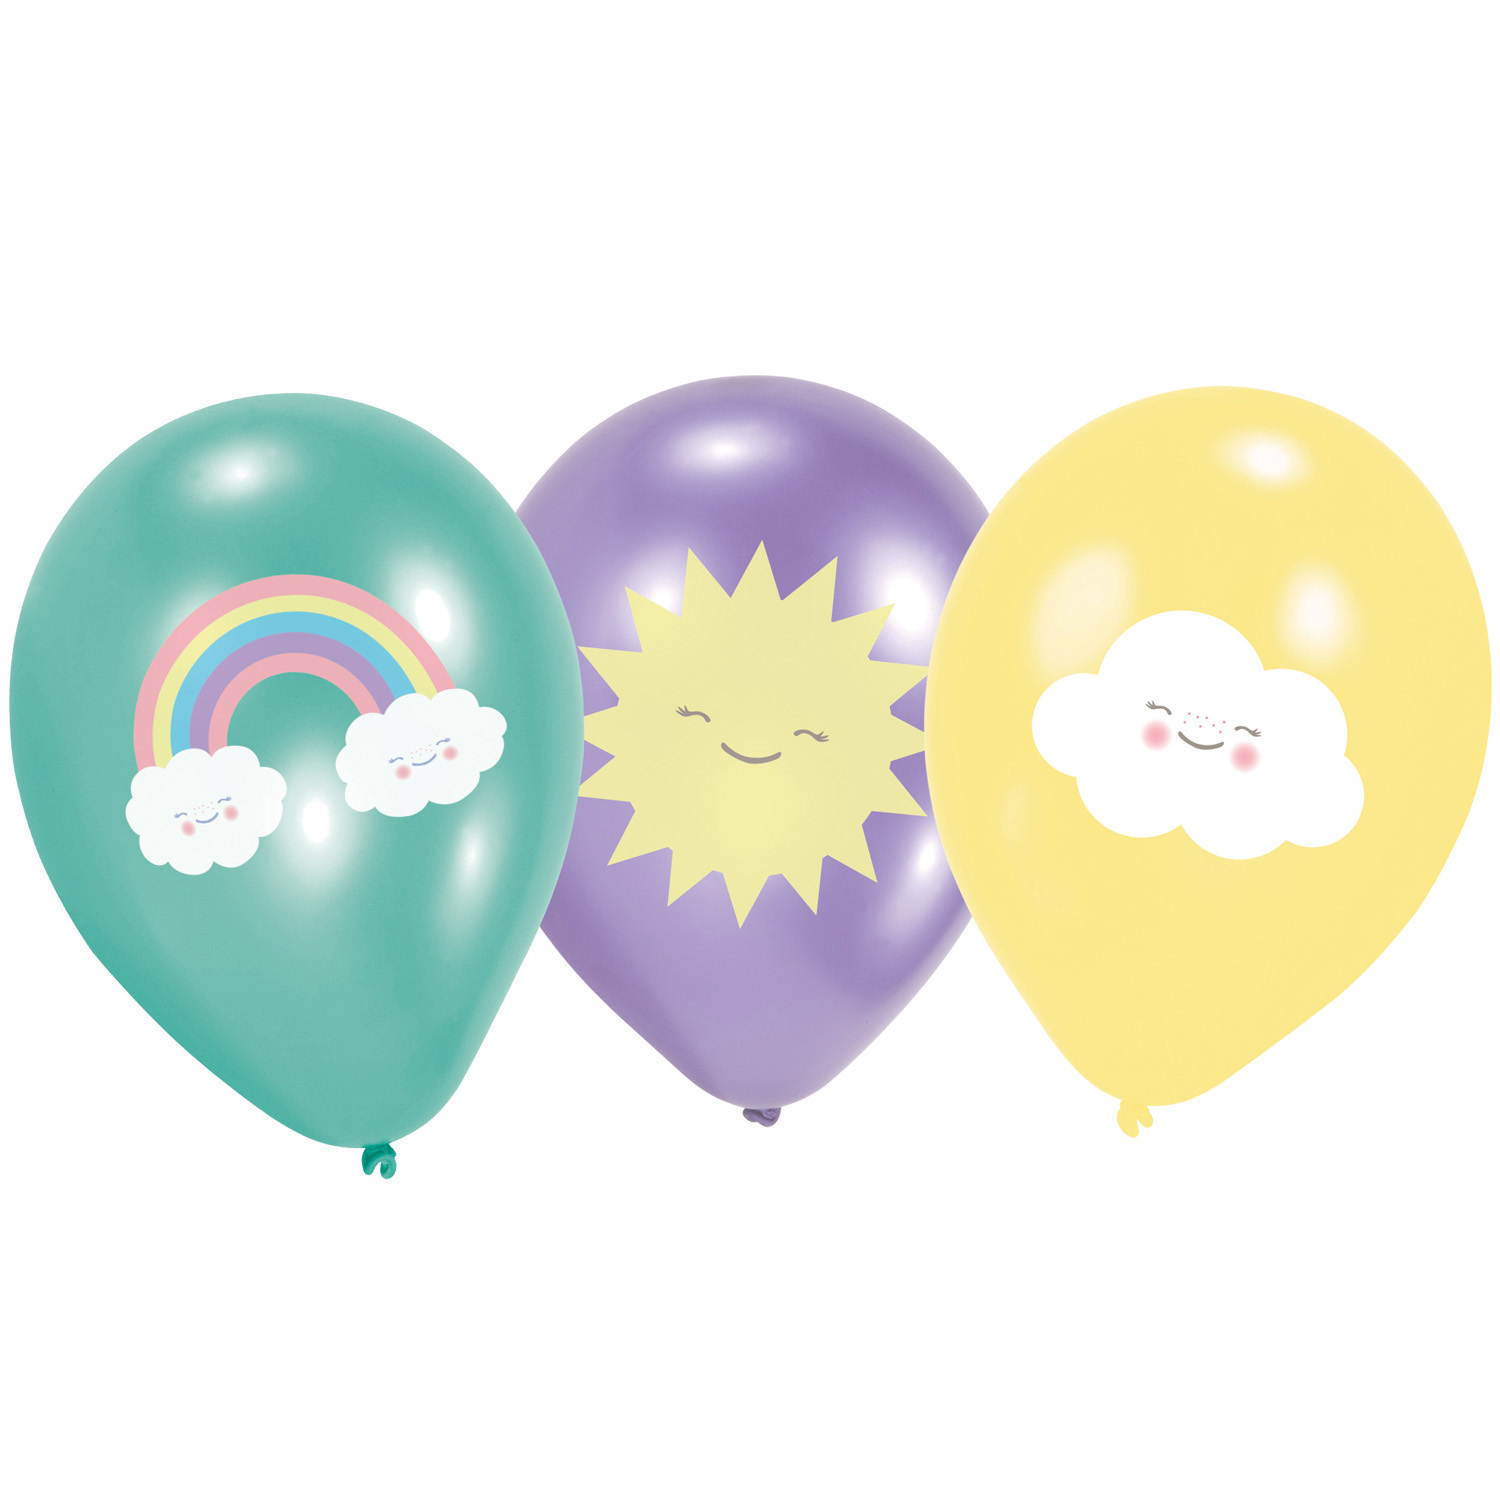 Λατέξ μπαλόνια - Ουράνιο τόξο και Σύννεφο 6 τμχ